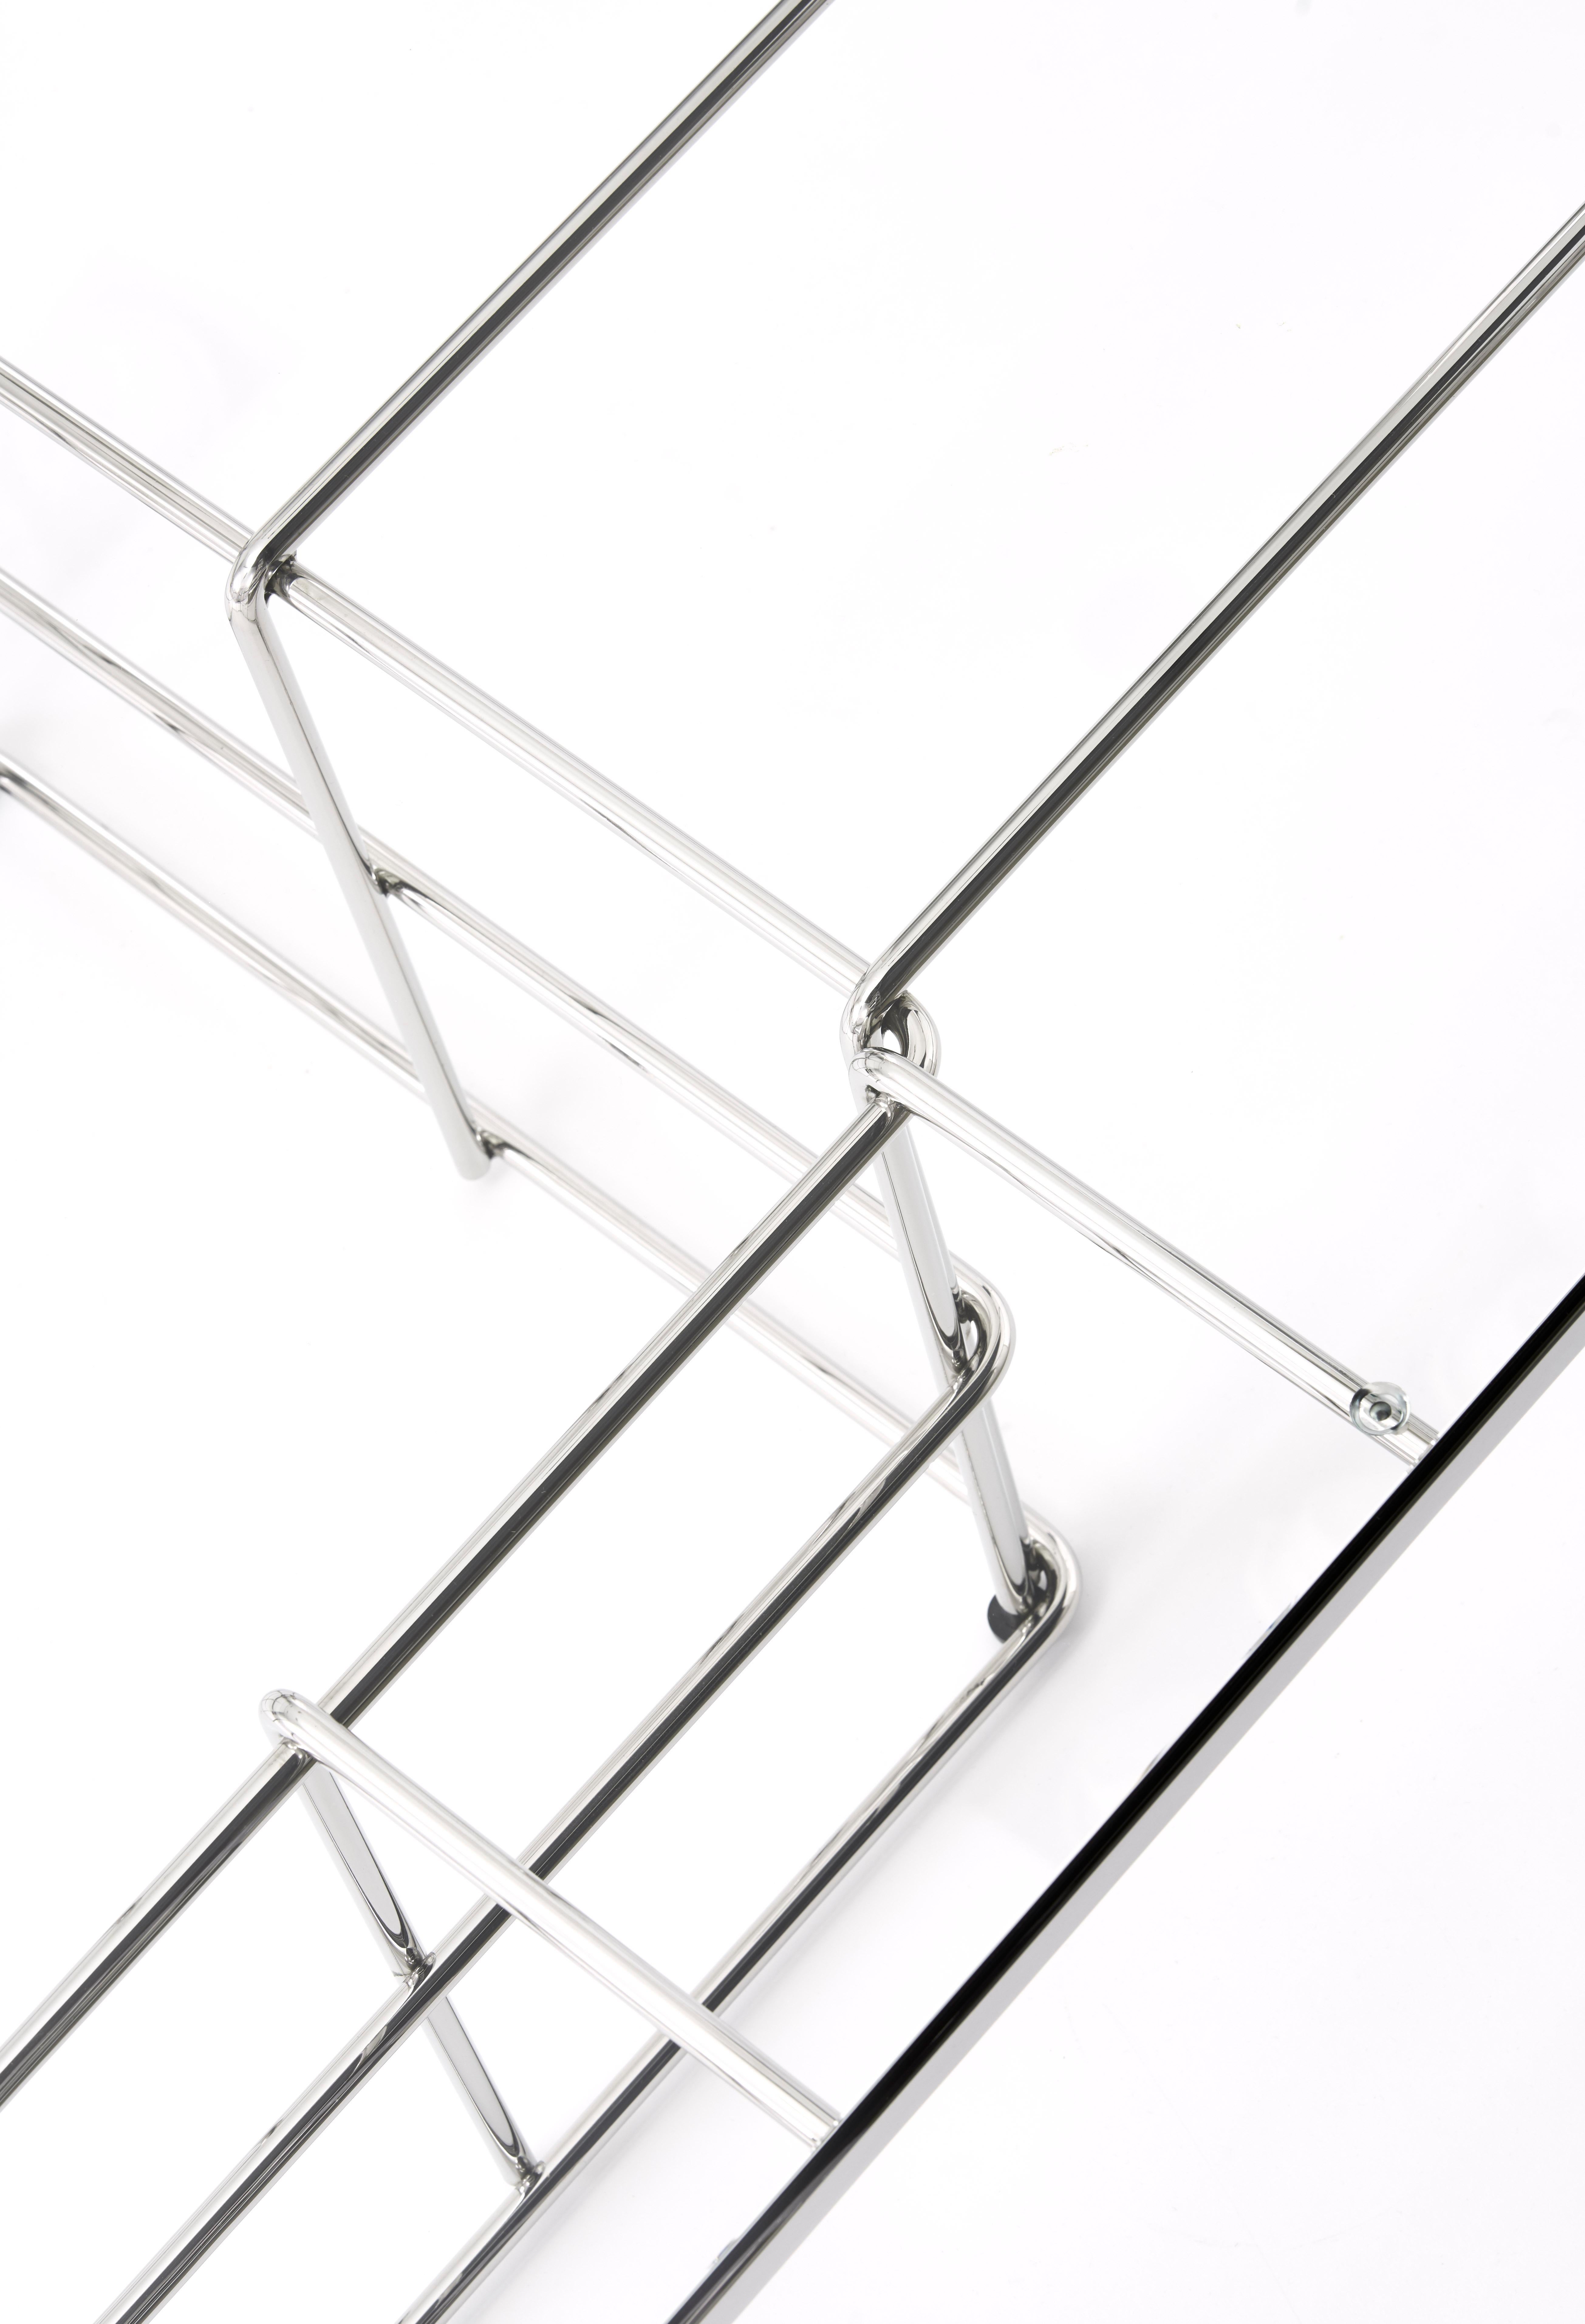 No. TA-002

Véritable caméléon, la table Bent Metal s'adapte sans effort à de nombreux styles disparates. Il est aussi à l'aise dans un environnement Art déco que dans un penthouse moderne ou un salon du 18e siècle.

La table en métal courbé fait